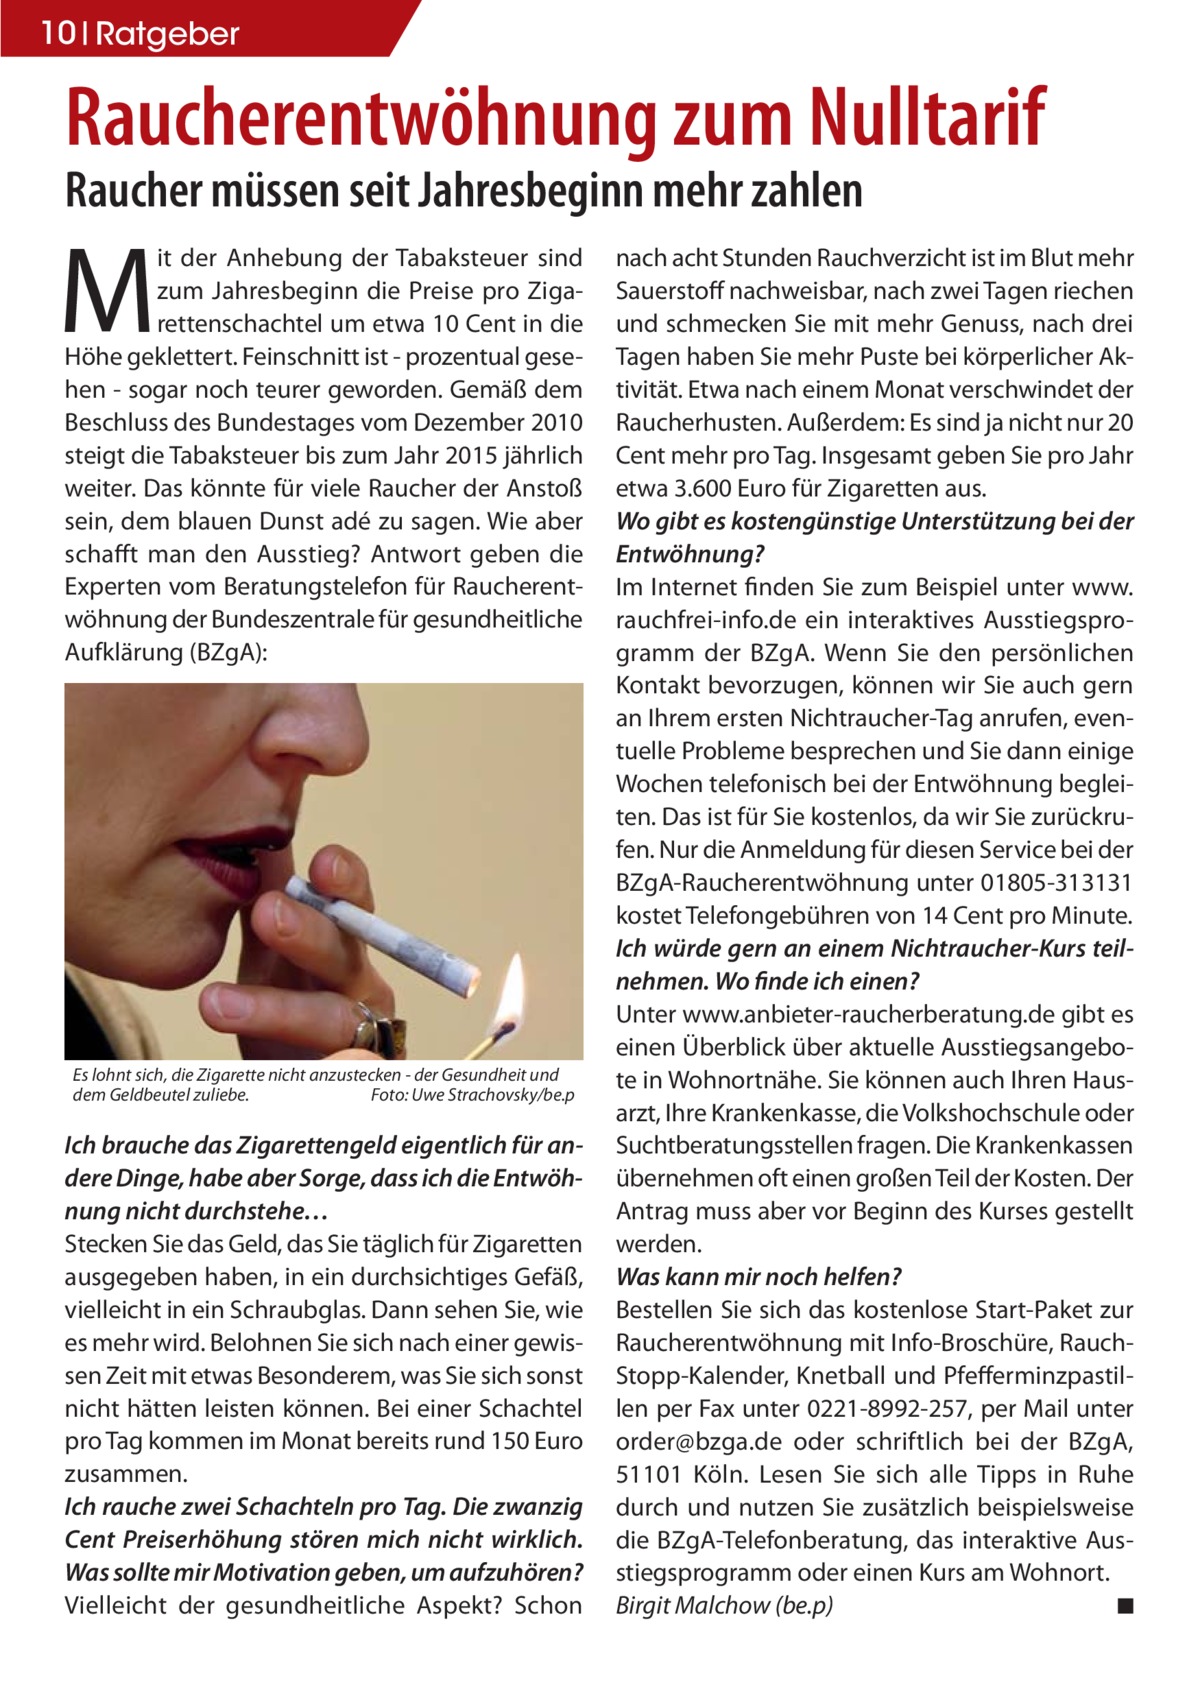 10 Ratgeber  Raucherentwöhnung zum Nulltarif Raucher müssen seit Jahresbeginn mehr zahlen  M  it der Anhebung der Tabaksteuer sind zum Jahresbeginn die Preise pro Zigarettenschachtel um etwa 10 Cent in die Höhe geklettert. Feinschnitt ist - prozentual gesehen - sogar noch teurer geworden. Gemäß dem Beschluss des Bundestages vom Dezember 2010 steigt die Tabaksteuer bis zum Jahr 2015 jährlich weiter. Das könnte für viele Raucher der Anstoß sein, dem blauen Dunst adé zu sagen. Wie aber schafft man den Ausstieg? Antwort geben die Experten vom Beratungstelefon für Raucherentwöhnung der Bundeszentrale für gesundheitliche Aufklärung (BZgA):  Es lohnt sich, die Zigarette nicht anzustecken - der Gesundheit und dem Geldbeutel zuliebe. Foto: Uwe Strachovsky/be.p  Ich brauche das Zigarettengeld eigentlich für andere Dinge, habe aber Sorge, dass ich die Entwöhnung nicht durchstehe… Stecken Sie das Geld, das Sie täglich für Zigaretten ausgegeben haben, in ein durchsichtiges Gefäß, vielleicht in ein Schraubglas. Dann sehen Sie, wie es mehr wird. Belohnen Sie sich nach einer gewissen Zeit mit etwas Besonderem, was Sie sich sonst nicht hätten leisten können. Bei einer Schachtel pro Tag kommen im Monat bereits rund 150 Euro zusammen. Ich rauche zwei Schachteln pro Tag. Die zwanzig Cent Preiserhöhung stören mich nicht wirklich. Was sollte mir Motivation geben, um aufzuhören? Vielleicht der gesundheitliche Aspekt? Schon  nach acht Stunden Rauchverzicht ist im Blut mehr Sauerstoff nachweisbar, nach zwei Tagen riechen und schmecken Sie mit mehr Genuss, nach drei Tagen haben Sie mehr Puste bei körperlicher Aktivität. Etwa nach einem Monat verschwindet der Raucherhusten. Außerdem: Es sind ja nicht nur 20 Cent mehr pro Tag. Insgesamt geben Sie pro Jahr etwa 3.600 Euro für Zigaretten aus. Wo gibt es kostengünstige Unterstützung bei der Entwöhnung? Im Internet finden Sie zum Beispiel unter www. rauchfrei-info.de ein interaktives Ausstiegsprogramm der BZgA. Wenn Sie den persönlichen Kontakt bevorzugen, können wir Sie auch gern an Ihrem ersten Nichtraucher-Tag anrufen, eventuelle Probleme besprechen und Sie dann einige Wochen telefonisch bei der Entwöhnung begleiten. Das ist für Sie kostenlos, da wir Sie zurückrufen. Nur die Anmeldung für diesen Service bei der BZgA-Raucherentwöhnung unter 01805-313131 kostet Telefongebühren von 14 Cent pro Minute. Ich würde gern an einem Nichtraucher-Kurs teilnehmen. Wo finde ich einen? Unter www.anbieter-raucherberatung.de gibt es einen Überblick über aktuelle Ausstiegsangebote in Wohnortnähe. Sie können auch Ihren Hausarzt, Ihre Krankenkasse, die Volkshochschule oder Suchtberatungsstellen fragen. Die Krankenkassen übernehmen oft einen großen Teil der Kosten. Der Antrag muss aber vor Beginn des Kurses gestellt werden. Was kann mir noch helfen? Bestellen Sie sich das kostenlose Start-Paket zur Raucherentwöhnung mit Info-Broschüre, RauchStopp-Kalender, Knetball und Pfefferminzpastillen per Fax unter 0221-8992-257, per Mail unter order@bzga.de oder schriftlich bei der BZgA, 51101 Köln. Lesen Sie sich alle Tipps in Ruhe durch und nutzen Sie zusätzlich beispielsweise die BZgA-Telefonberatung, das interaktive Ausstiegsprogramm oder einen Kurs am Wohnort. Birgit Malchow (be.p) ◾